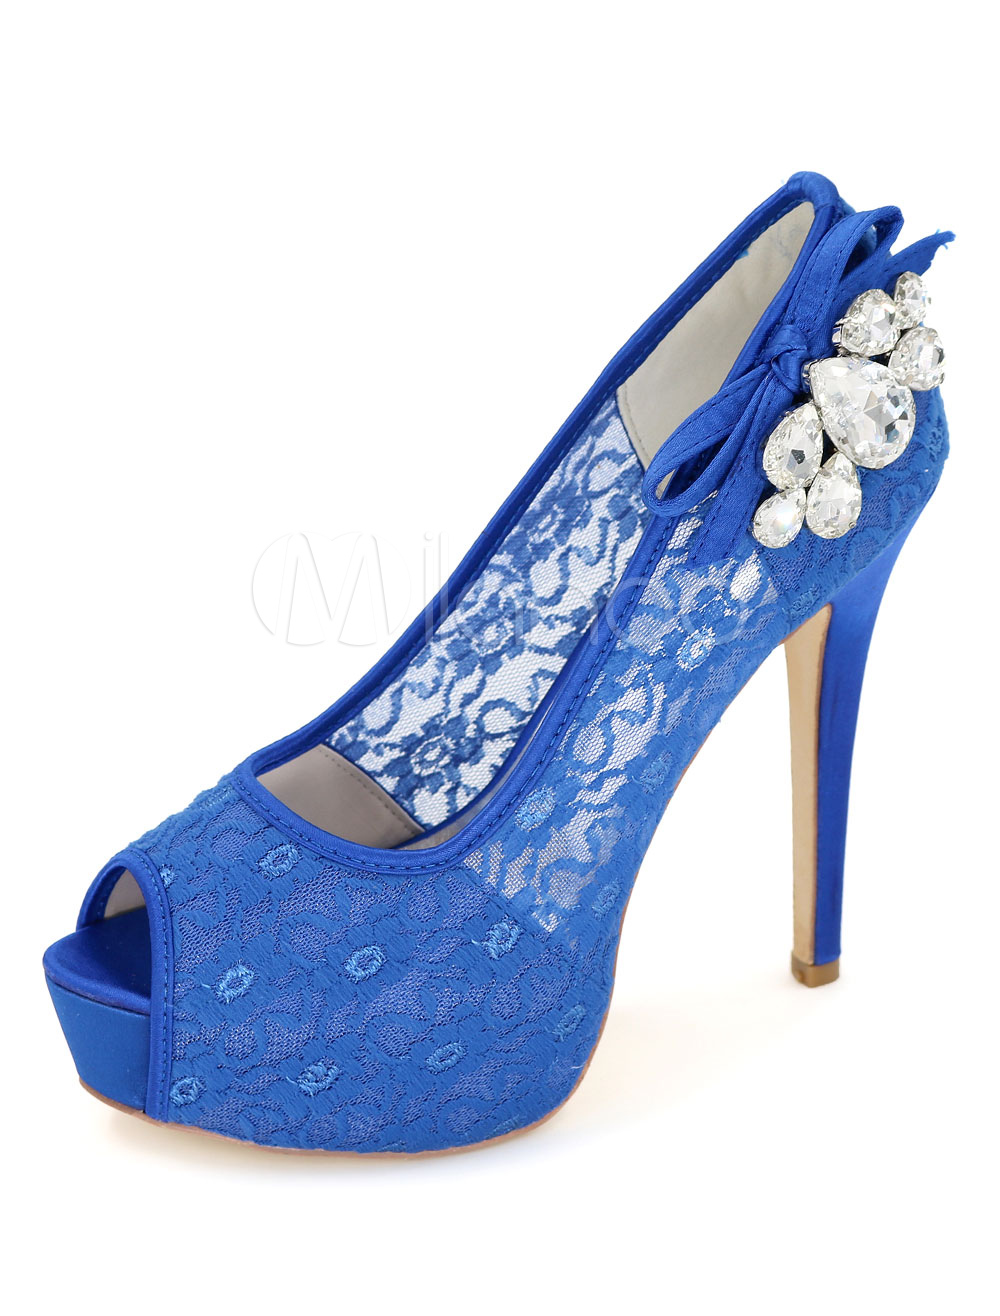 Ivory Wedding Shoes Platform Lace Peep Toe Slip On Rhinestone High Heel Bridal Shoes 